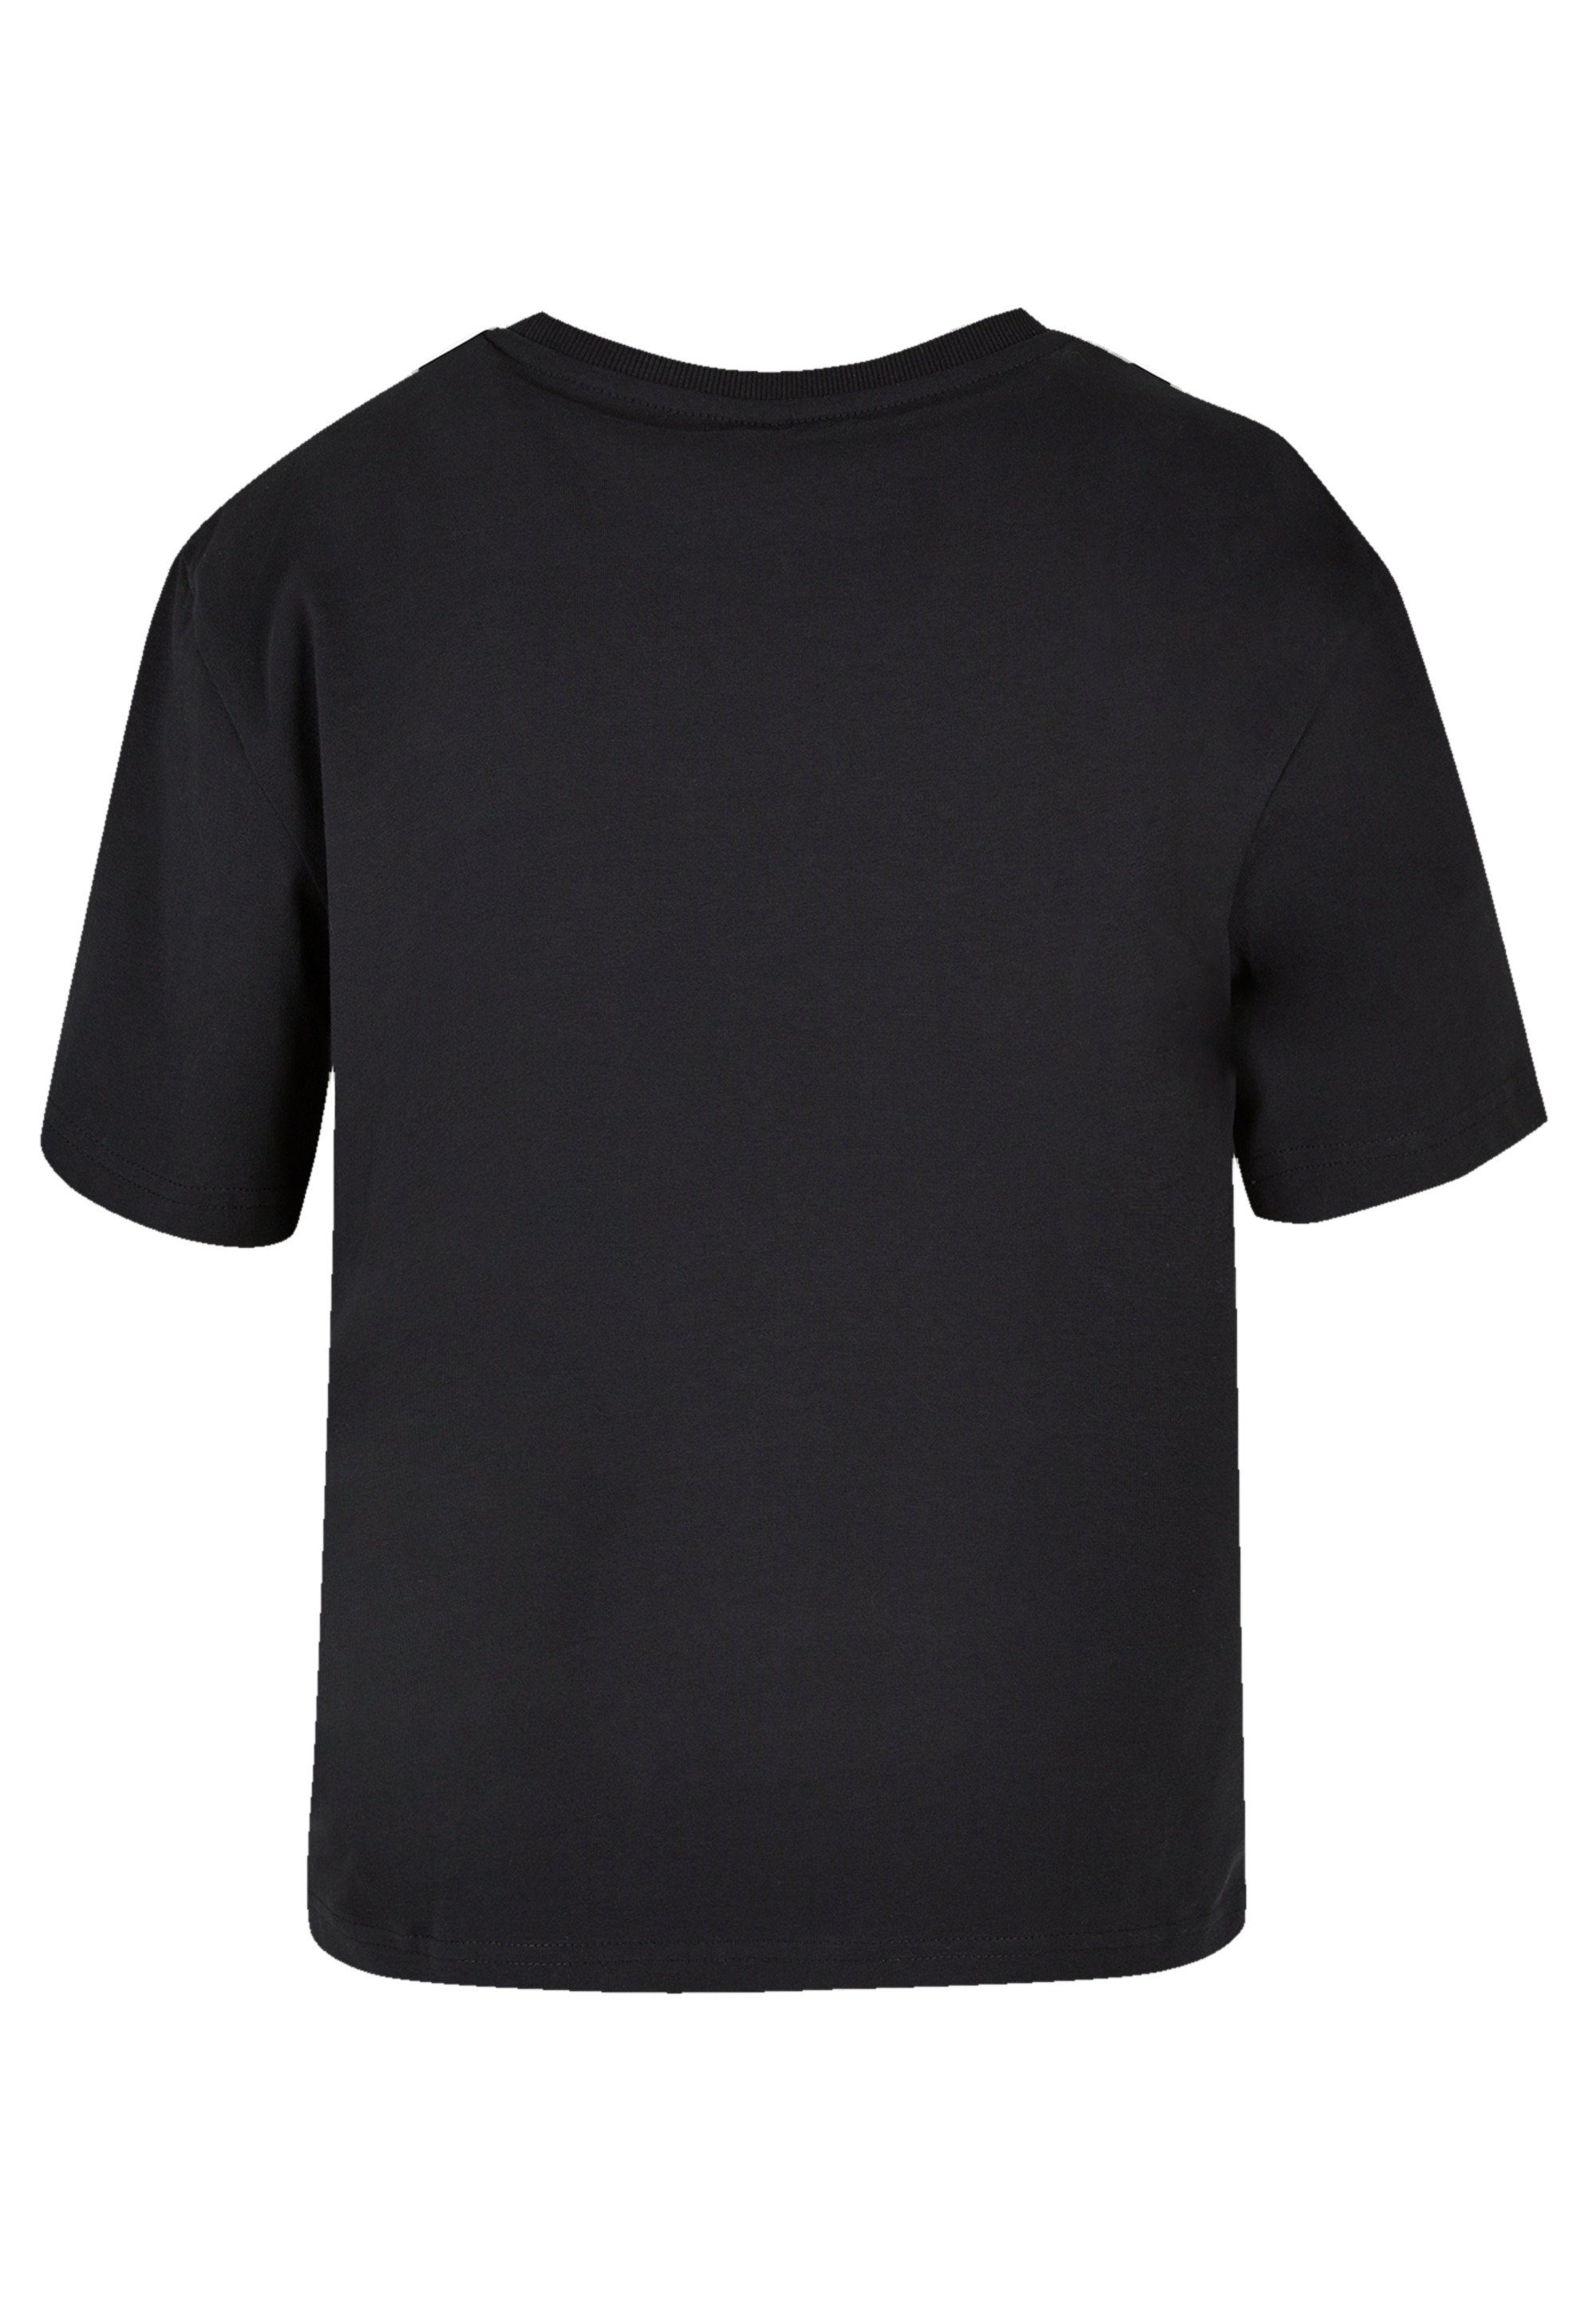 vielseitig Onward Premium Komfortabel F4NT4STIC Qualität, Let kombinierbar Disney T-Shirt und